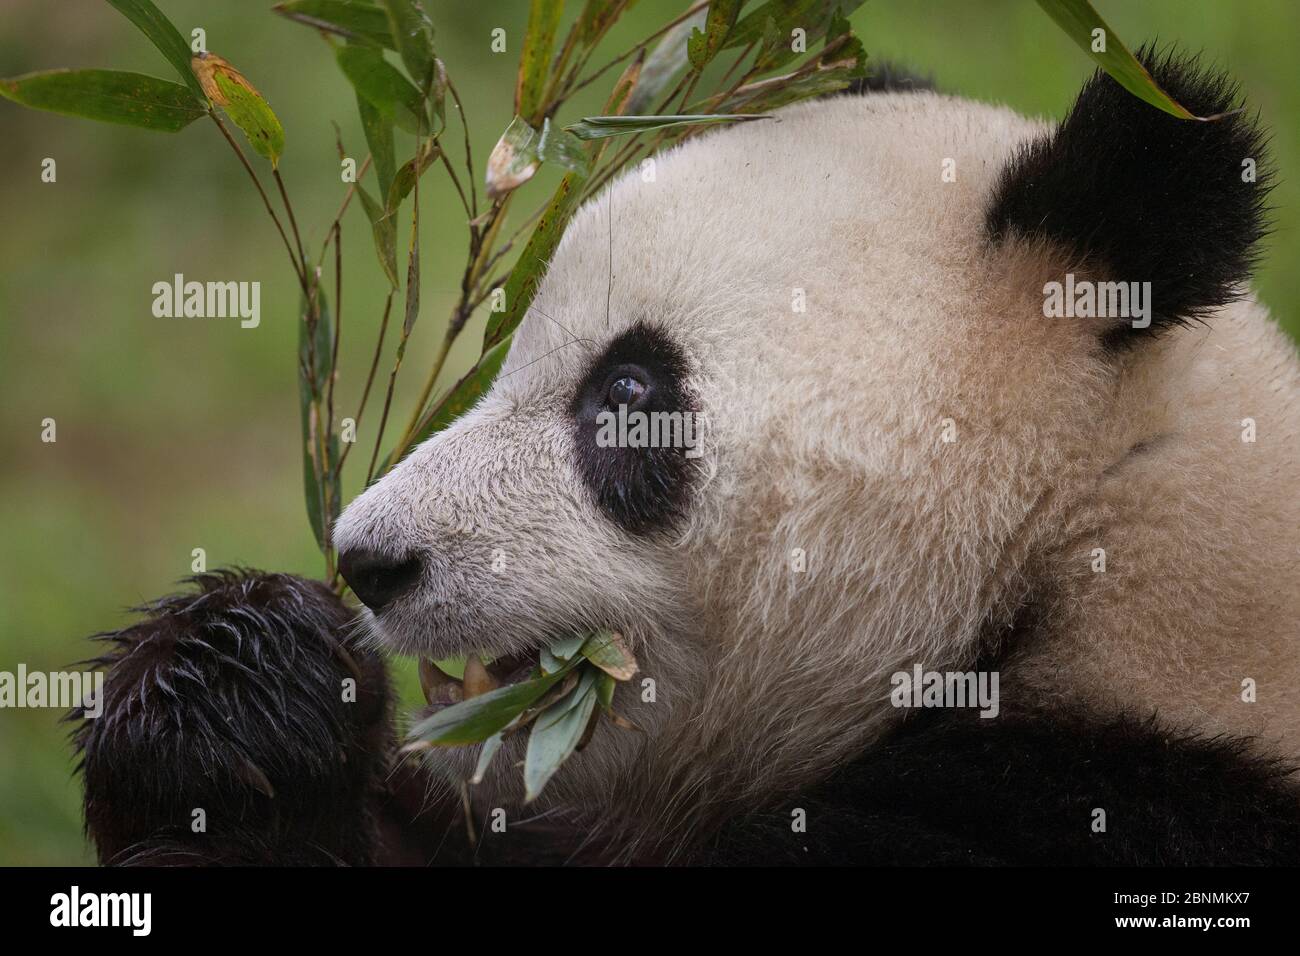 Panda géante (Ailuropoda melanoleuca) se nourrissant de bambou, captif, Chine Banque D'Images